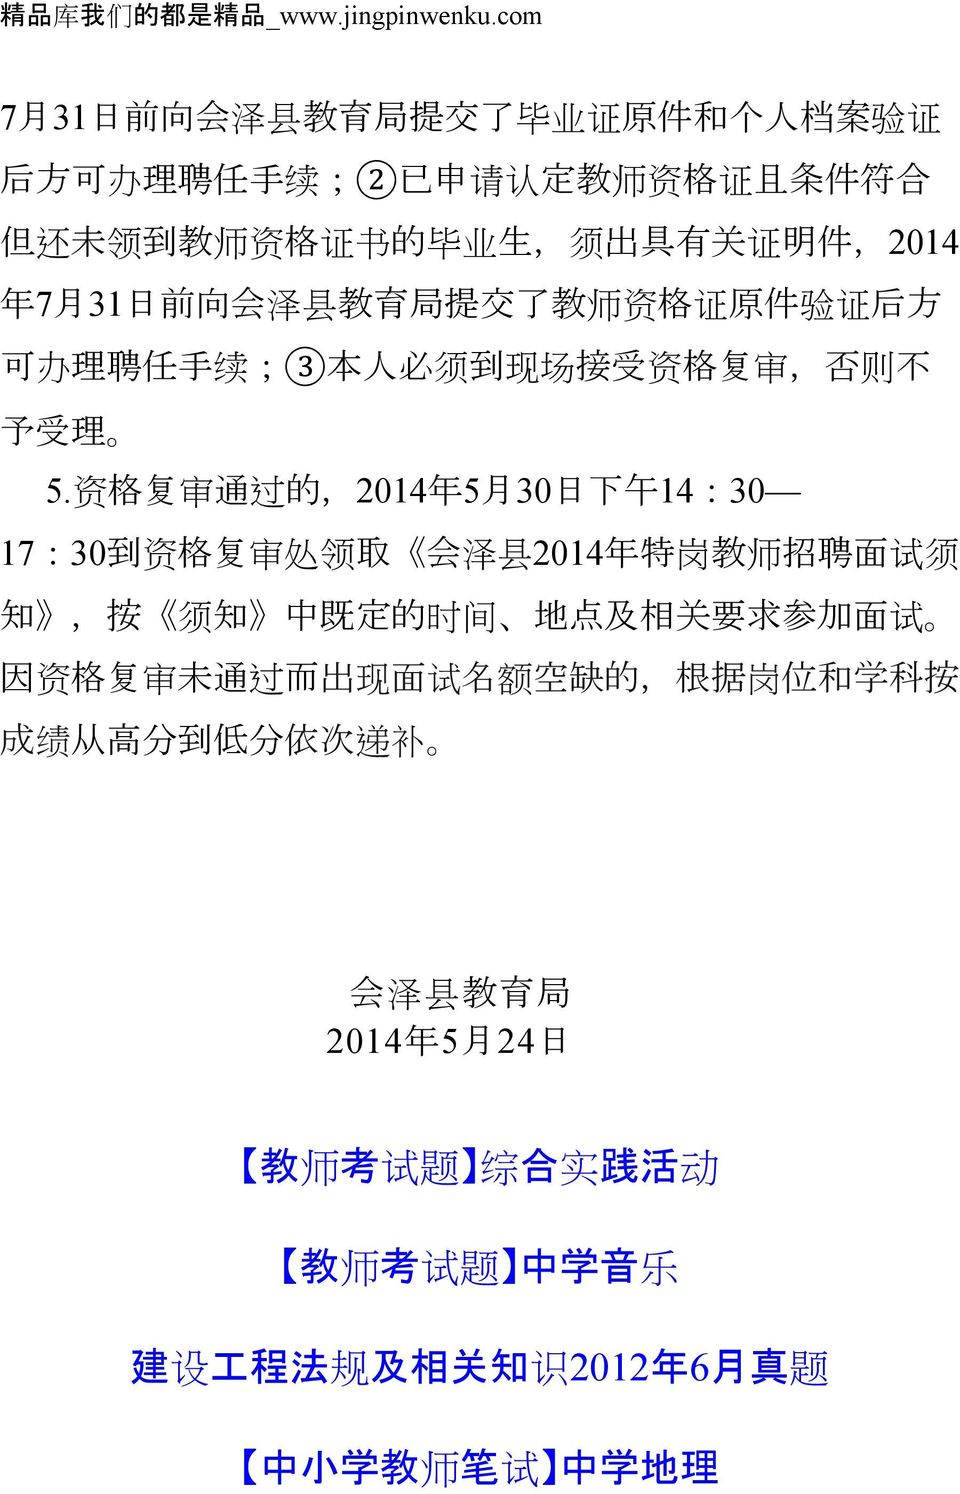 7 月 31 日 前 向 会 泽 县 教 育 局 提 交 了 教 师 资 格 证 原 件 验 证 后 方 可 办 理 聘 任 手 续 ;3 本 人 必 须 到 现 场 接 受 资 格 复 审, 否 则 不 予 受 理 5.